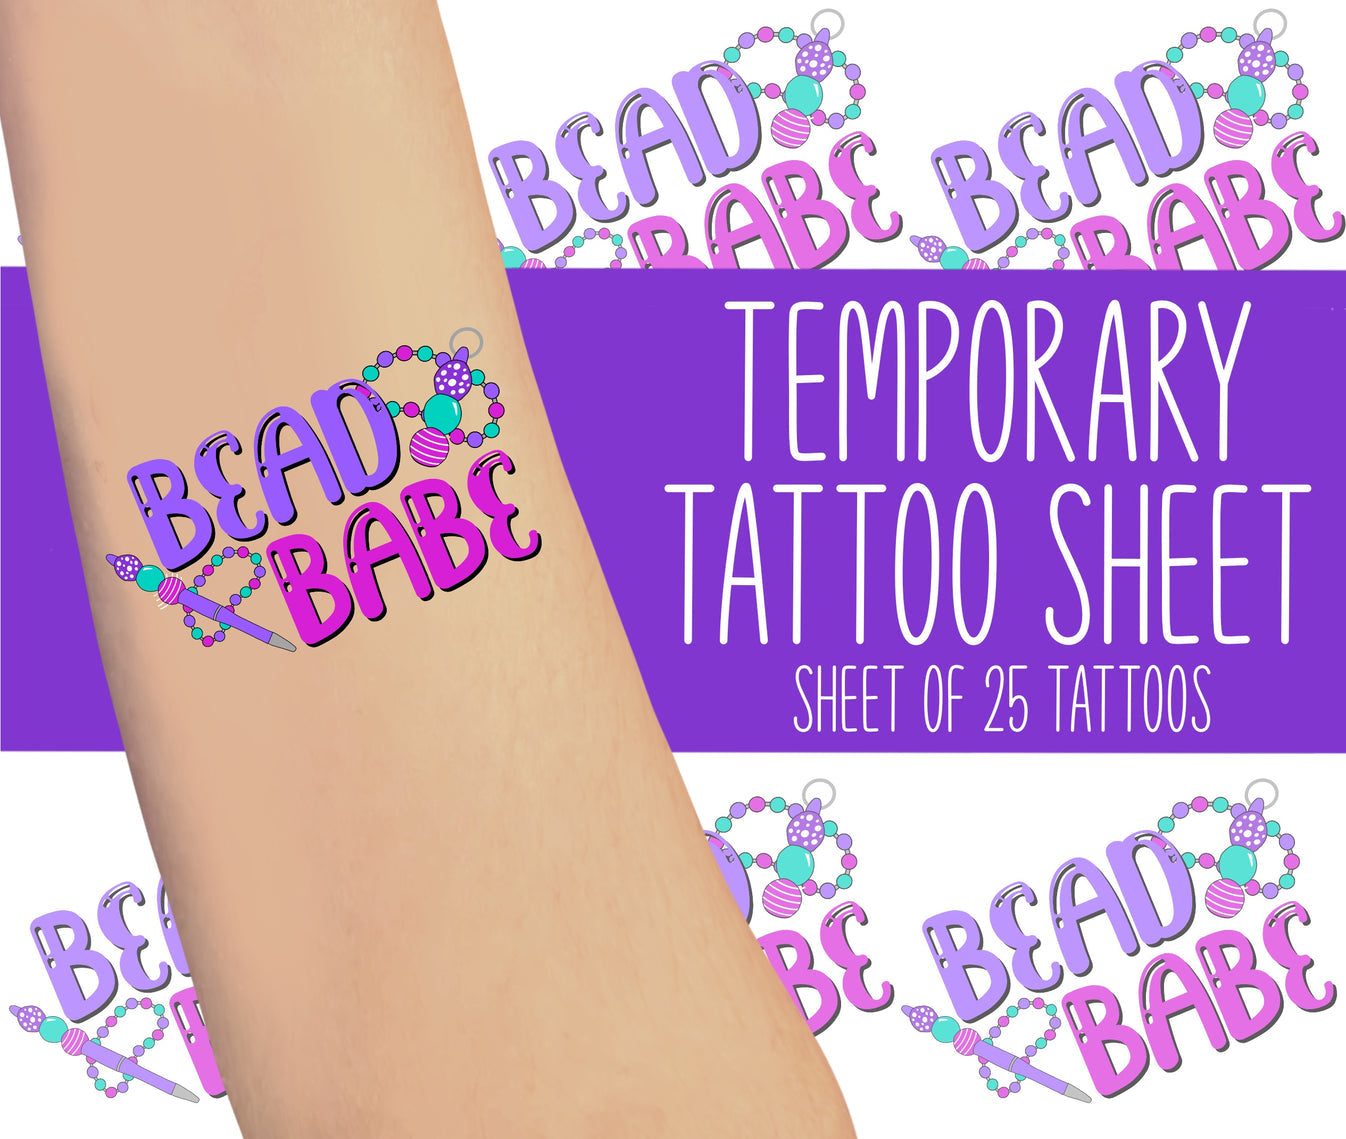 Bead Babe Temporary Tattoos